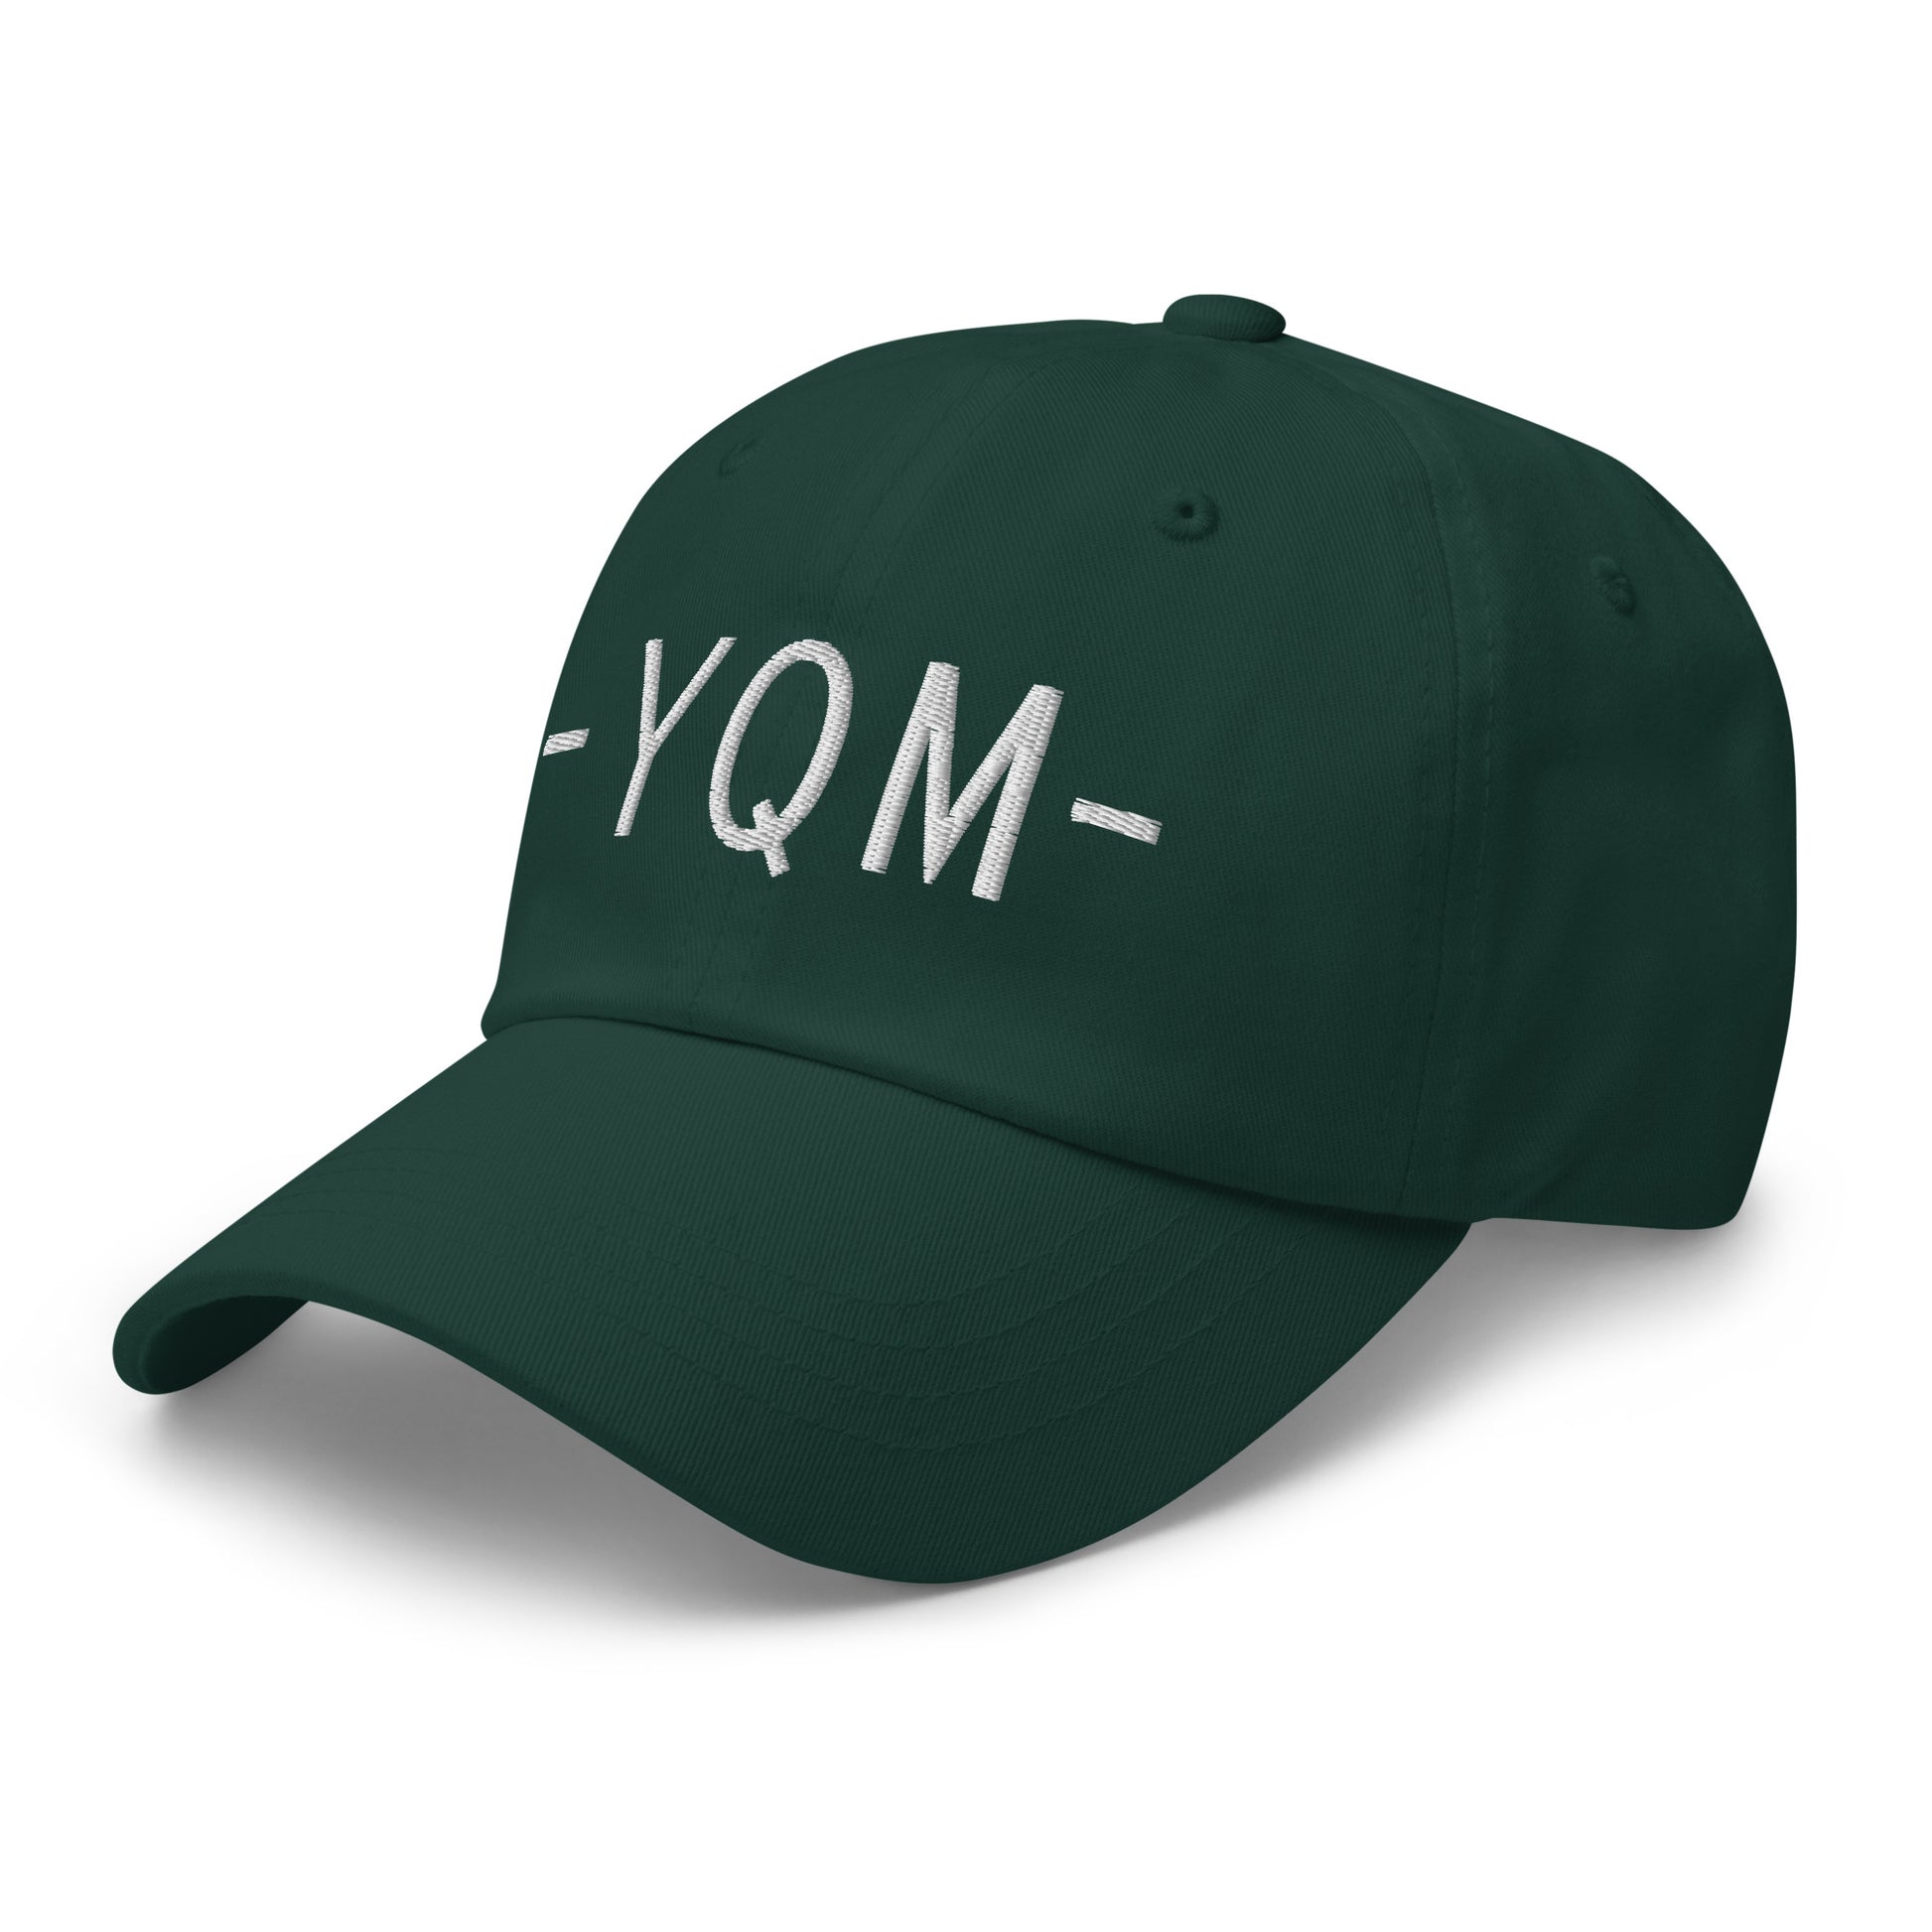 Souvenir Baseball Cap - White • YQM Moncton • YHM Designs - Image 18